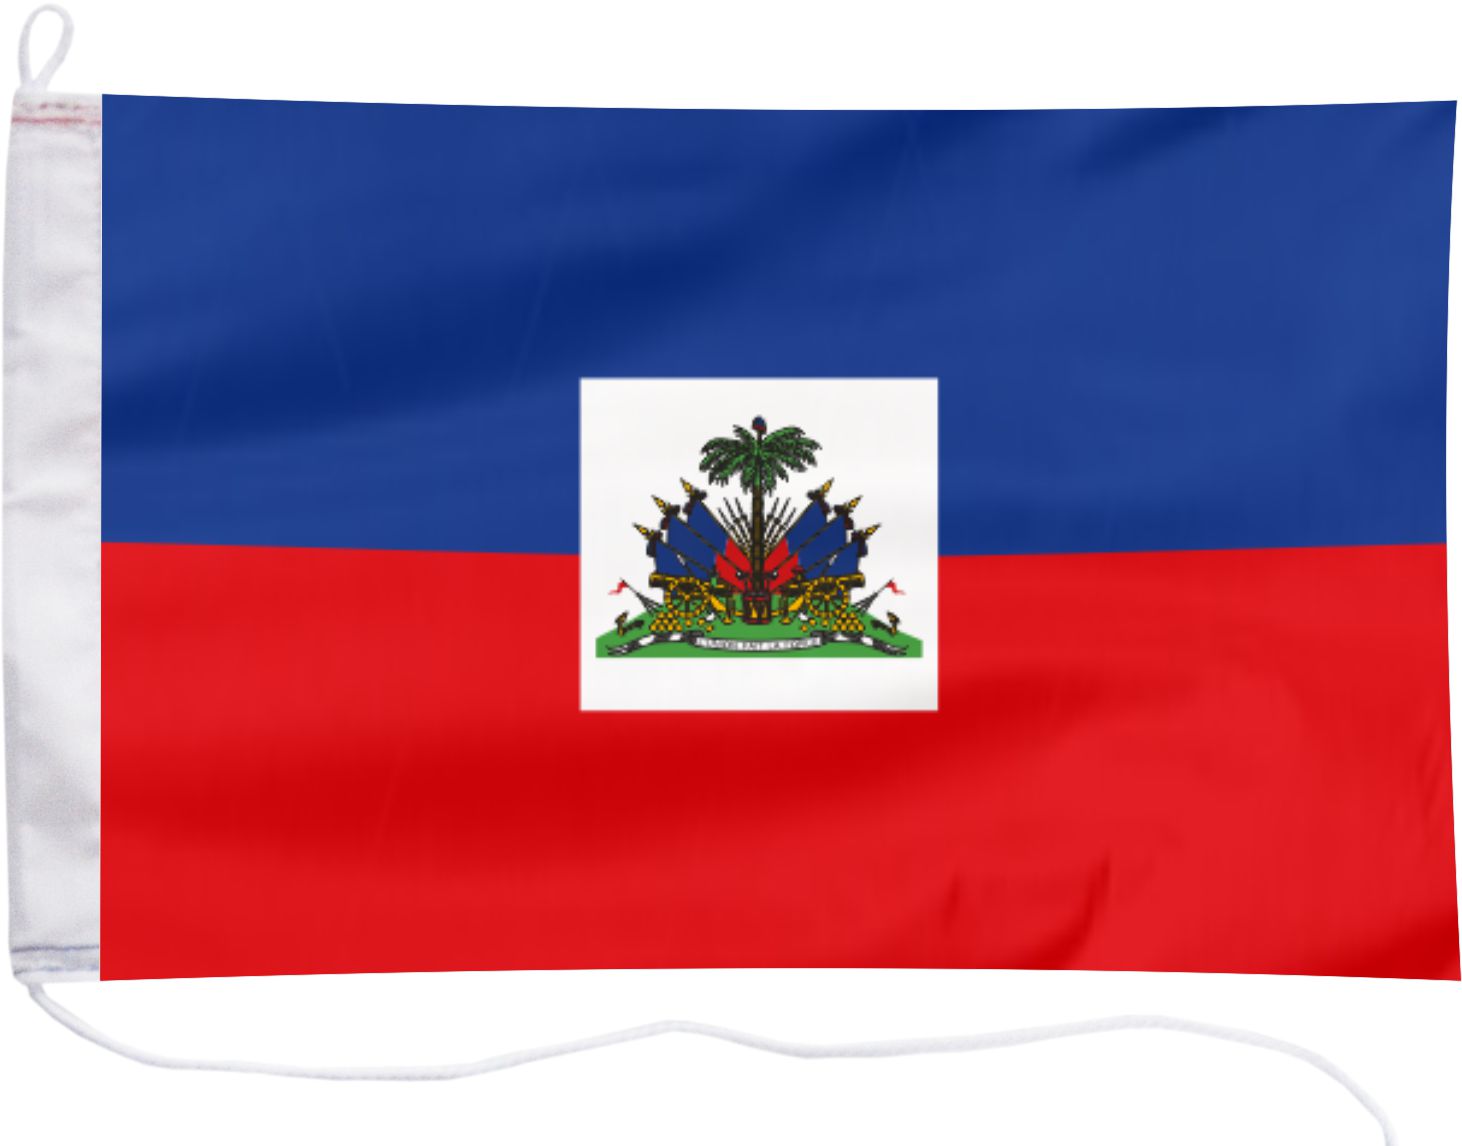 Флаг Гаити флаг яхты 65x40см - продажа в Украине с доставкой из Европы. 